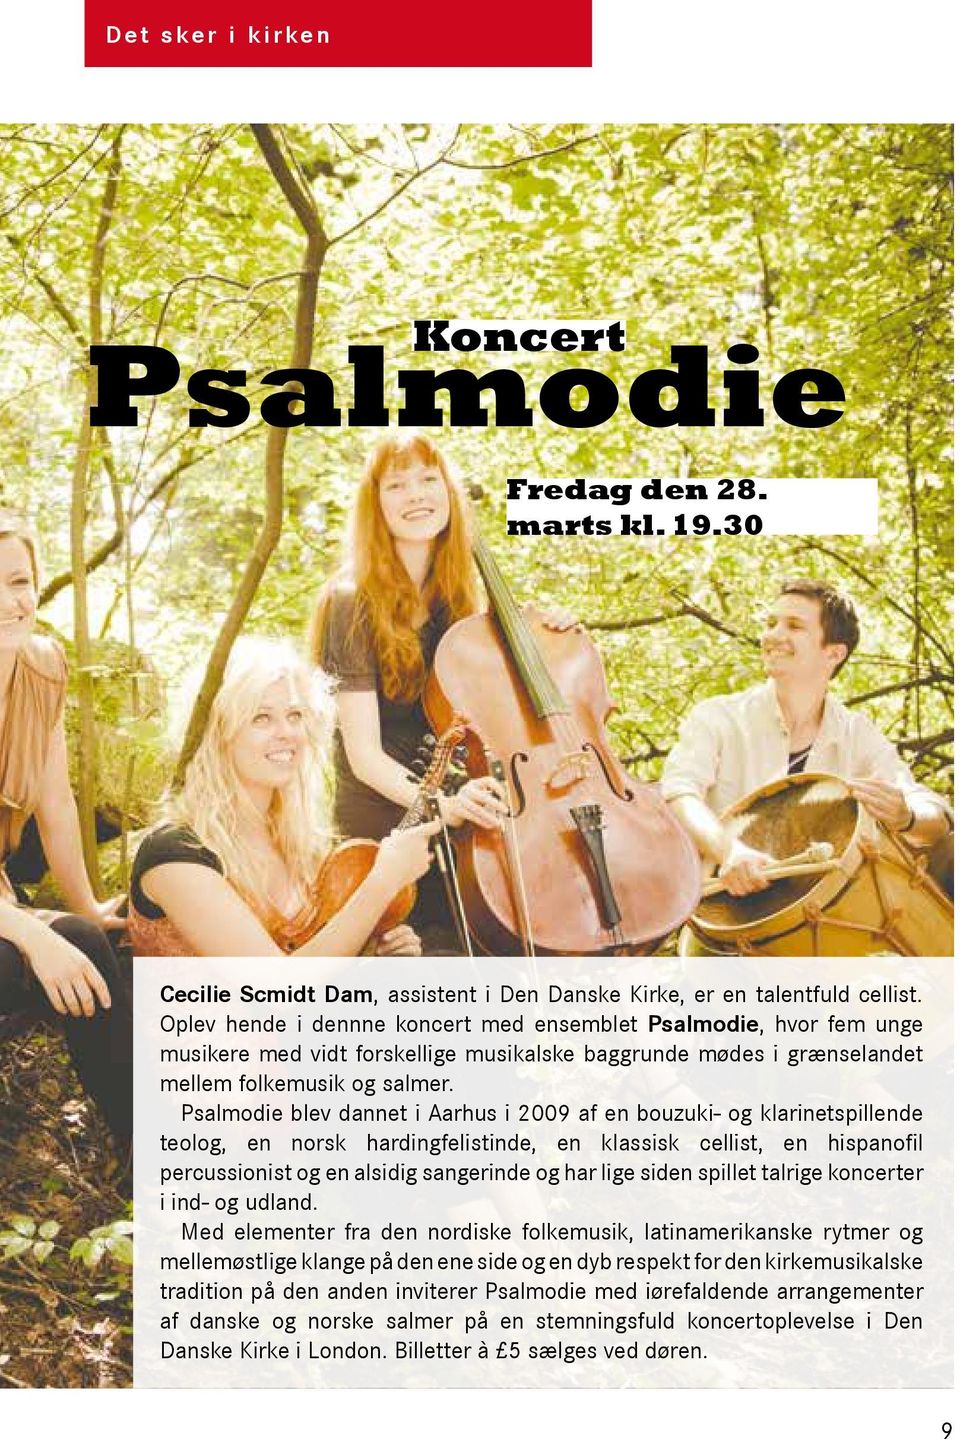 Psalmodie blev dannet i Aarhus i 2009 af en bouzuki- og klarinetspillende teolog, en norsk hardingfelistinde, en klassisk cellist, en hispanofil percussionist og en alsidig sangerinde og har lige